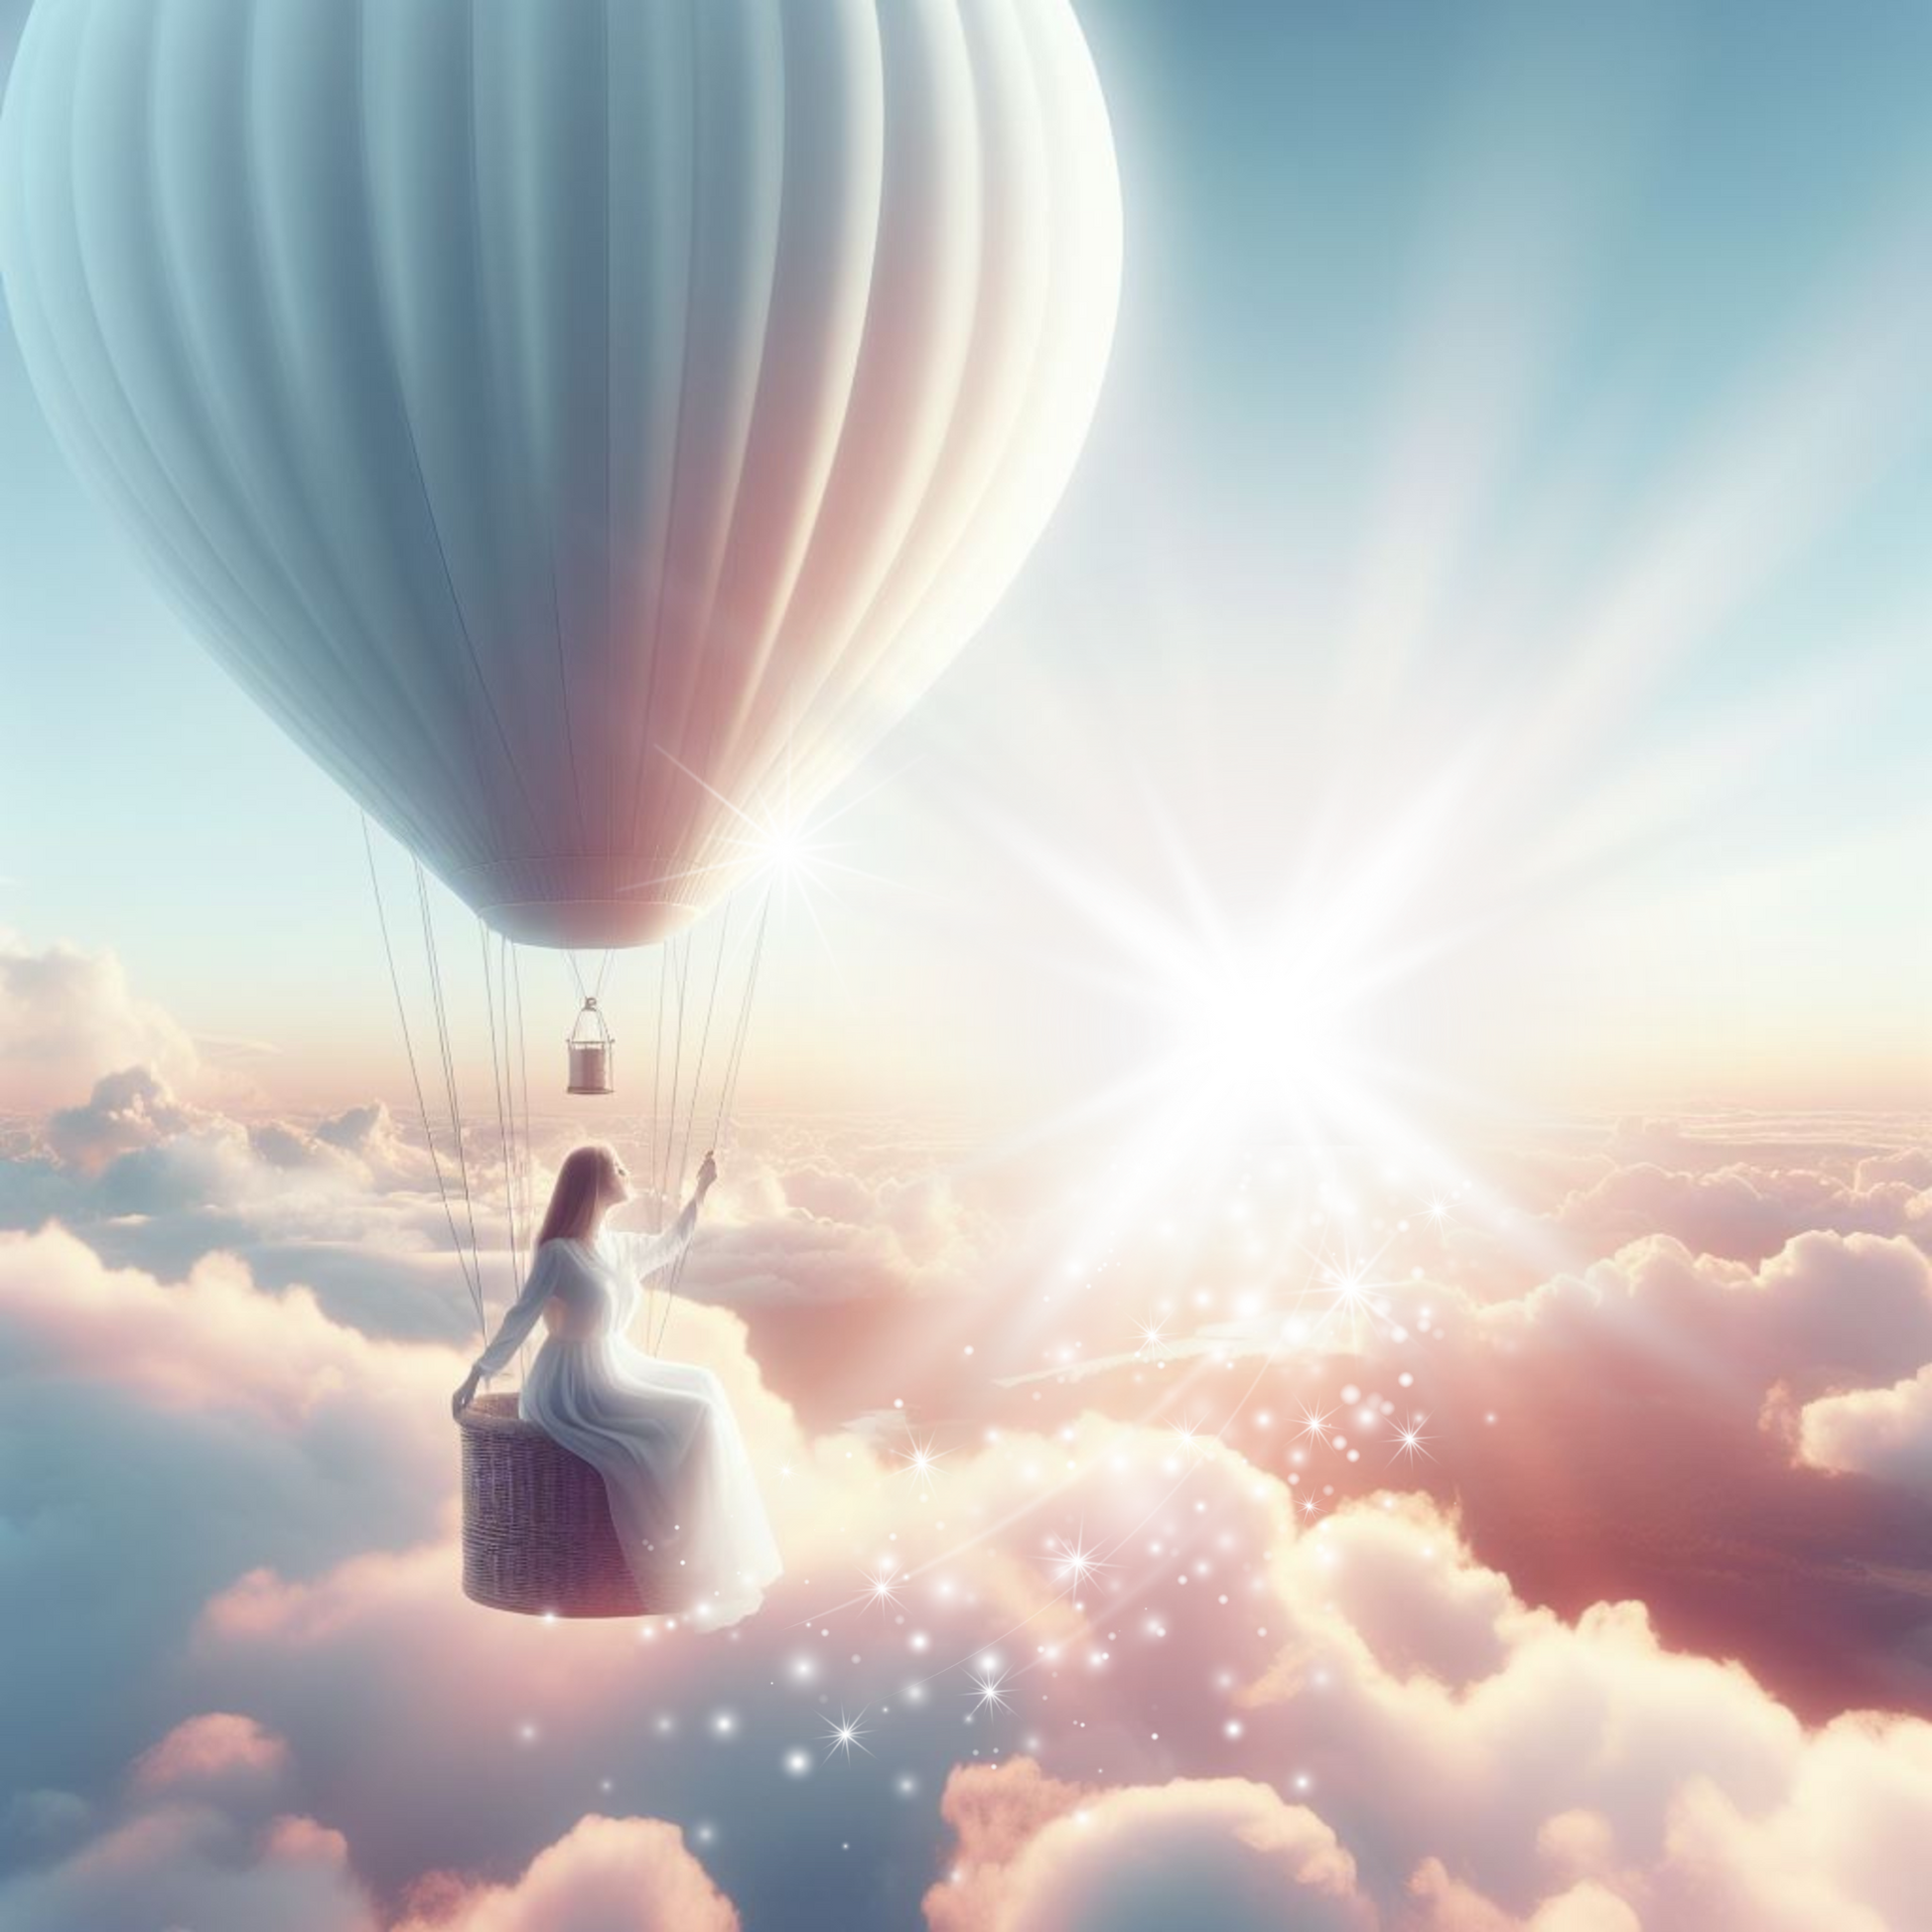 Ballonfahrt. Eine Frau sitzt am Rand des Heißluftballons und lässt die Füße in den Wolken schweben.